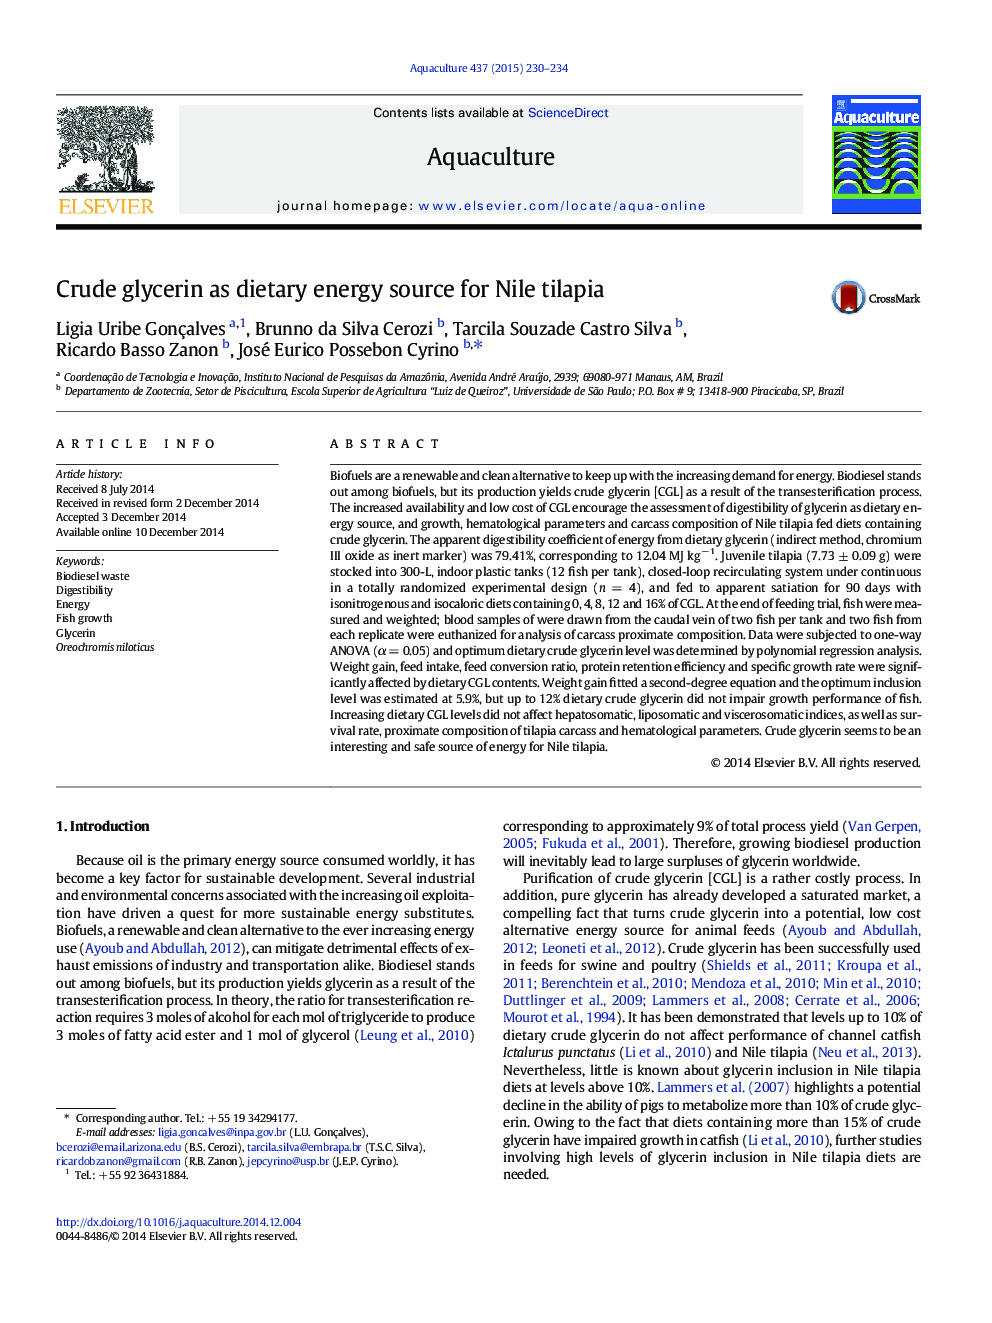 گلیسیرین خام به عنوان منبع انرژی رژیم برای نیل تیلایپیا 